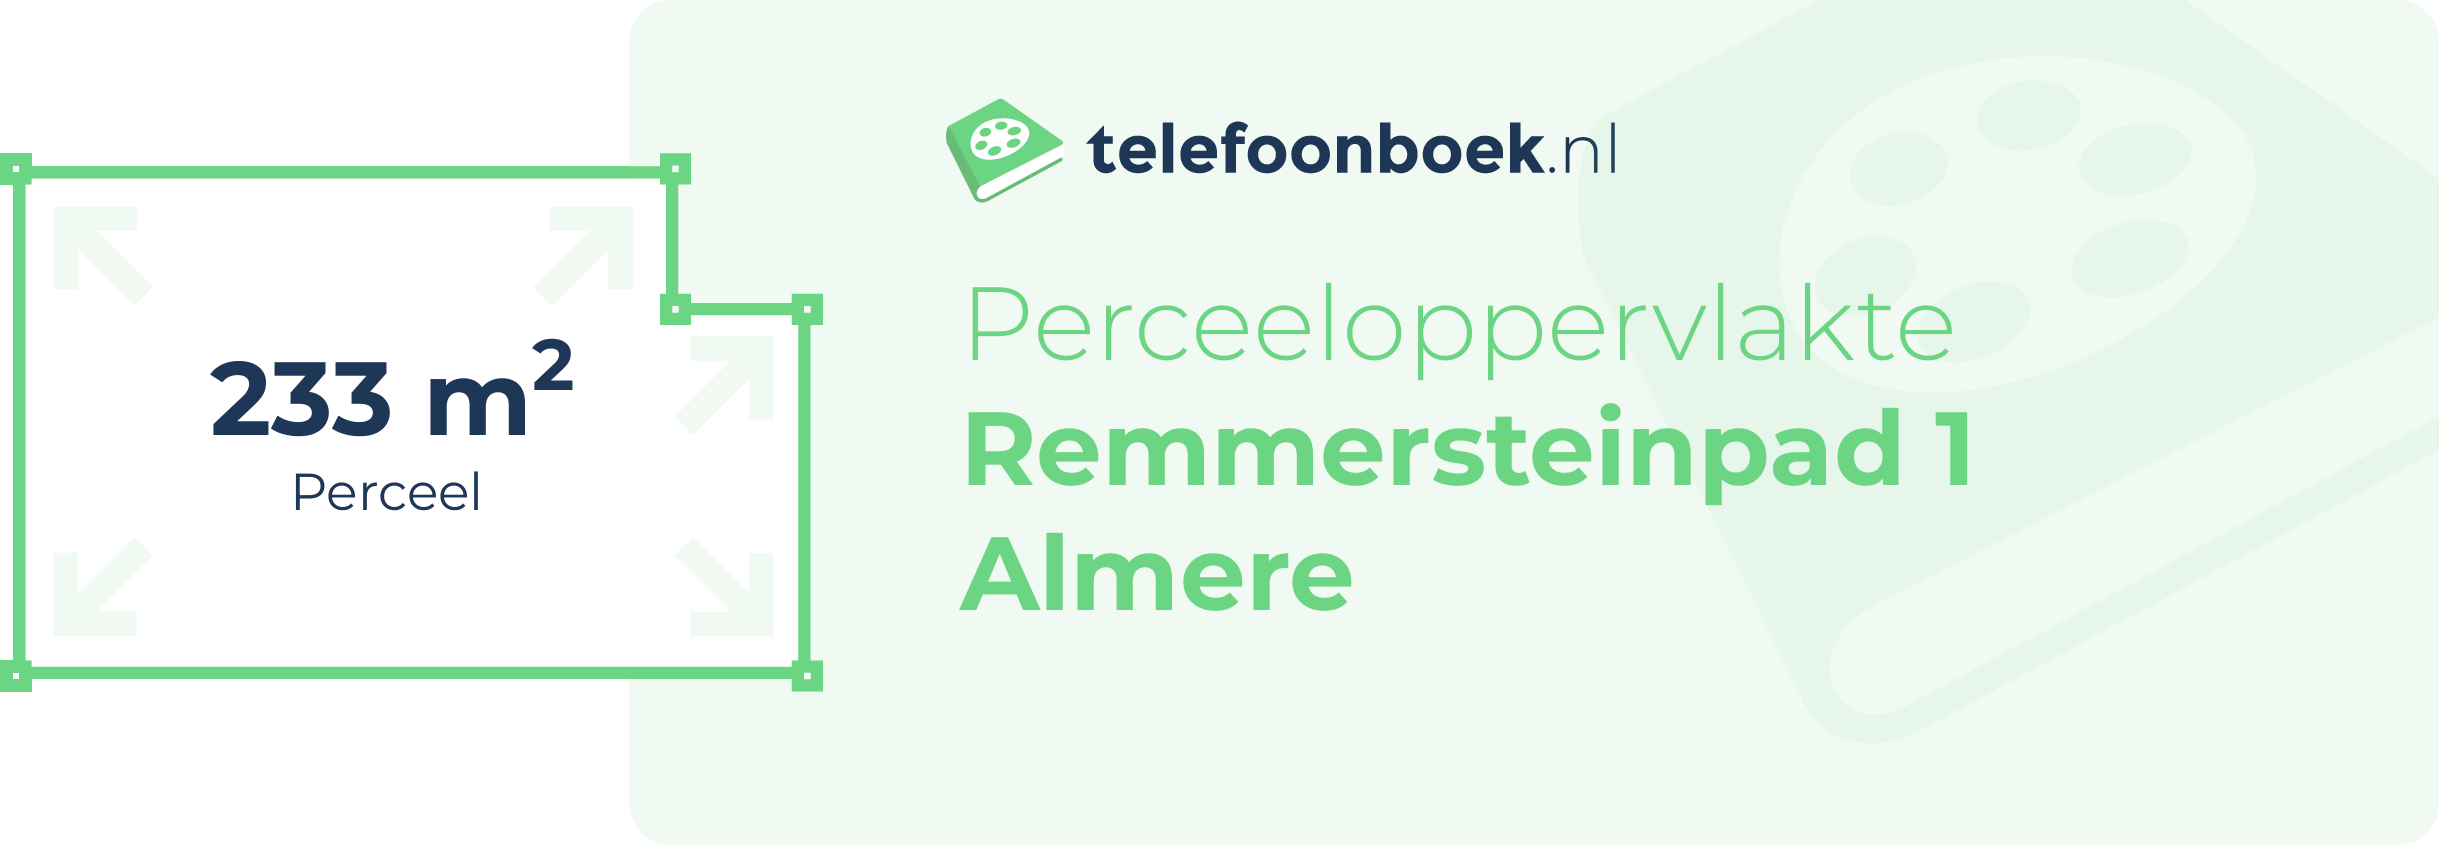 Perceeloppervlakte Remmersteinpad 1 Almere